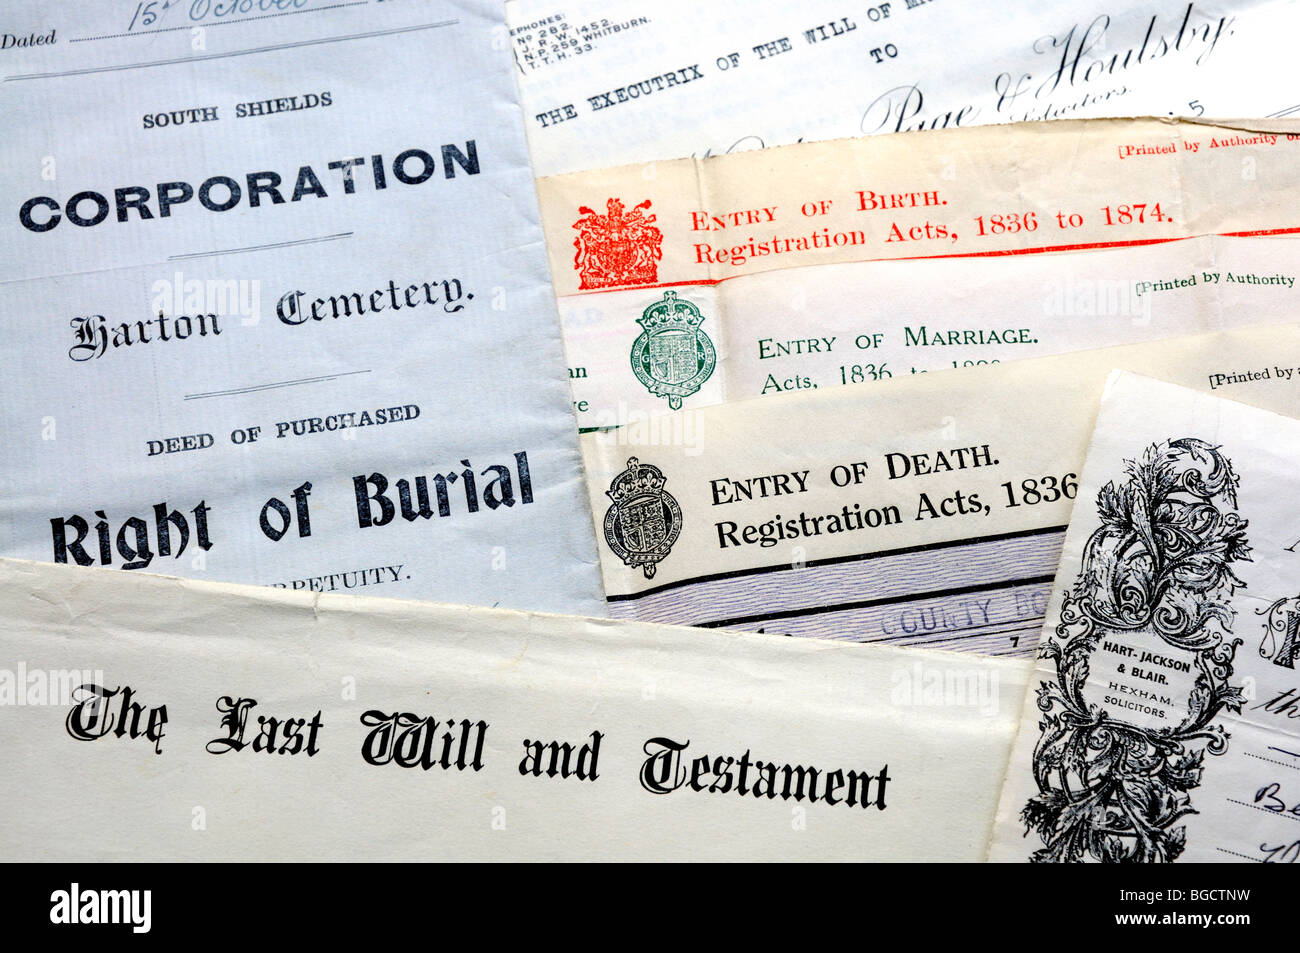 Genealogie-Dokumente - Zertifikate von Geburt, Heirat und Tod, Bestattung und letzten Willen und testament Stockfoto